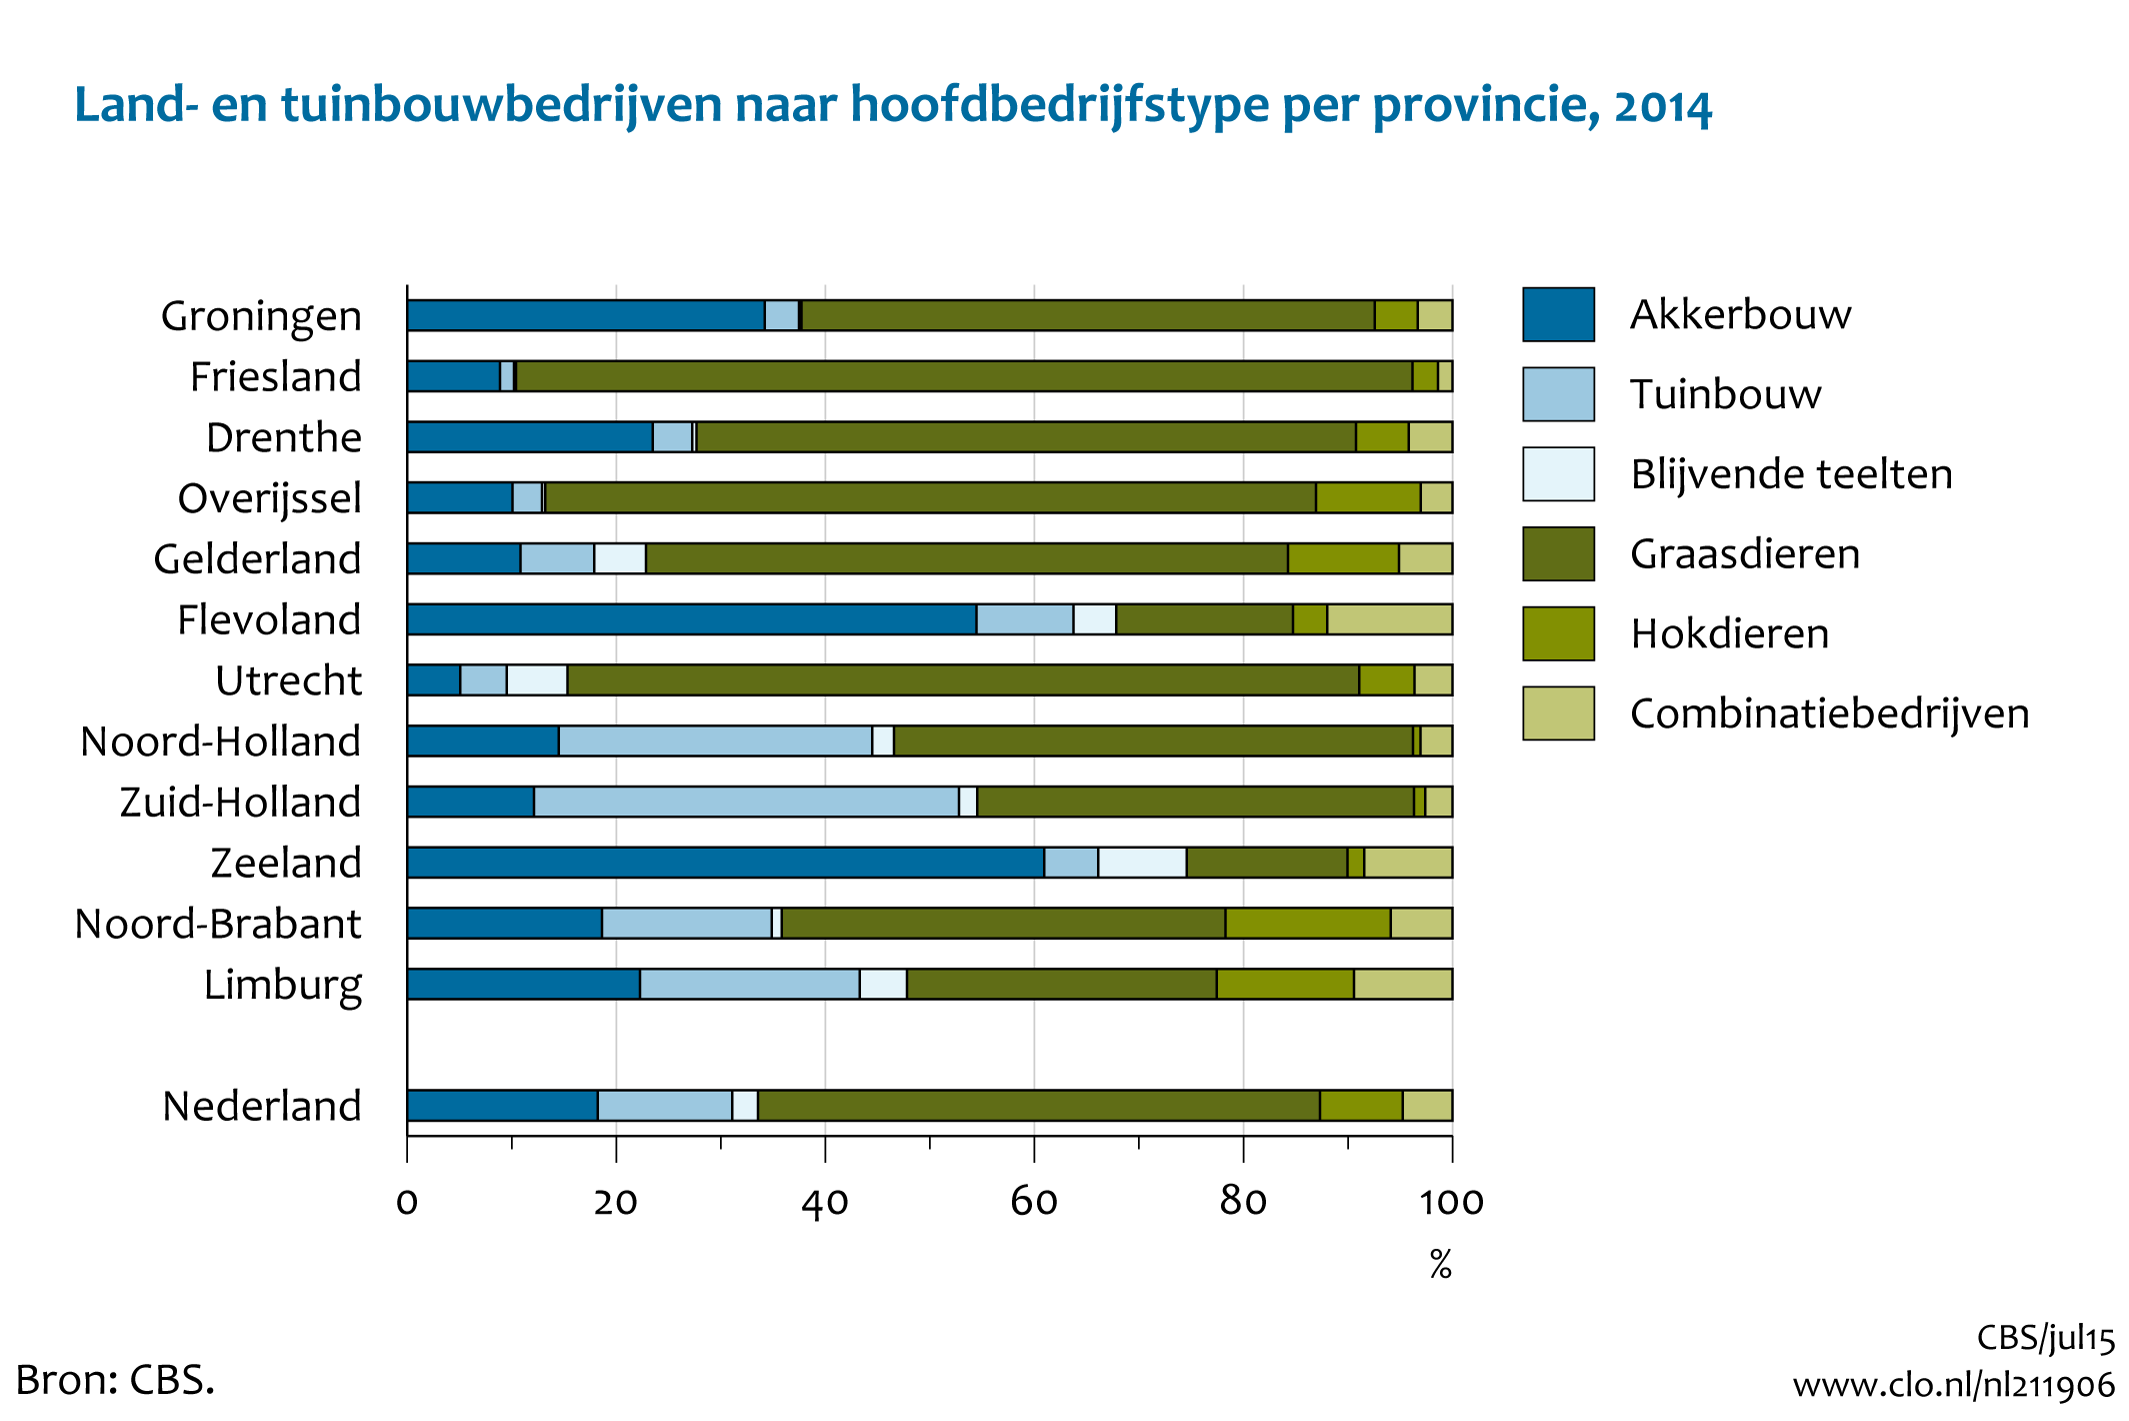 Figuur  Land- en tuinbouwbedrijven naar hoofdbedrijfstype per provincie, 2014. In de rest van de tekst wordt deze figuur uitgebreider uitgelegd.